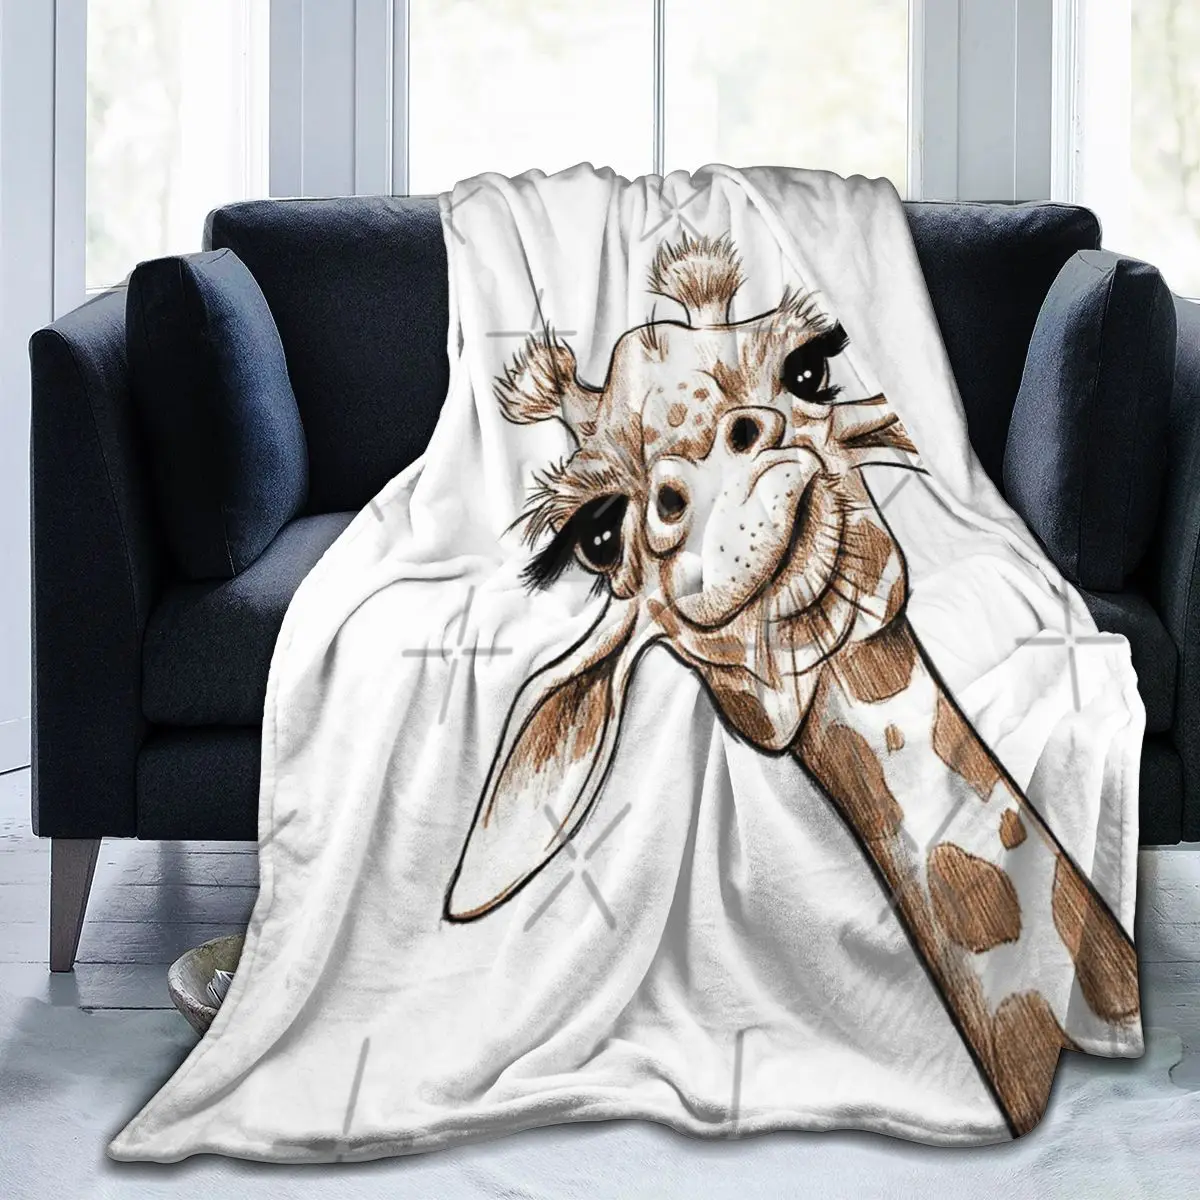 

Одеяло с рисунком жирафа, модное одеяло для лица, для особых дней, нескользящее, разных размеров